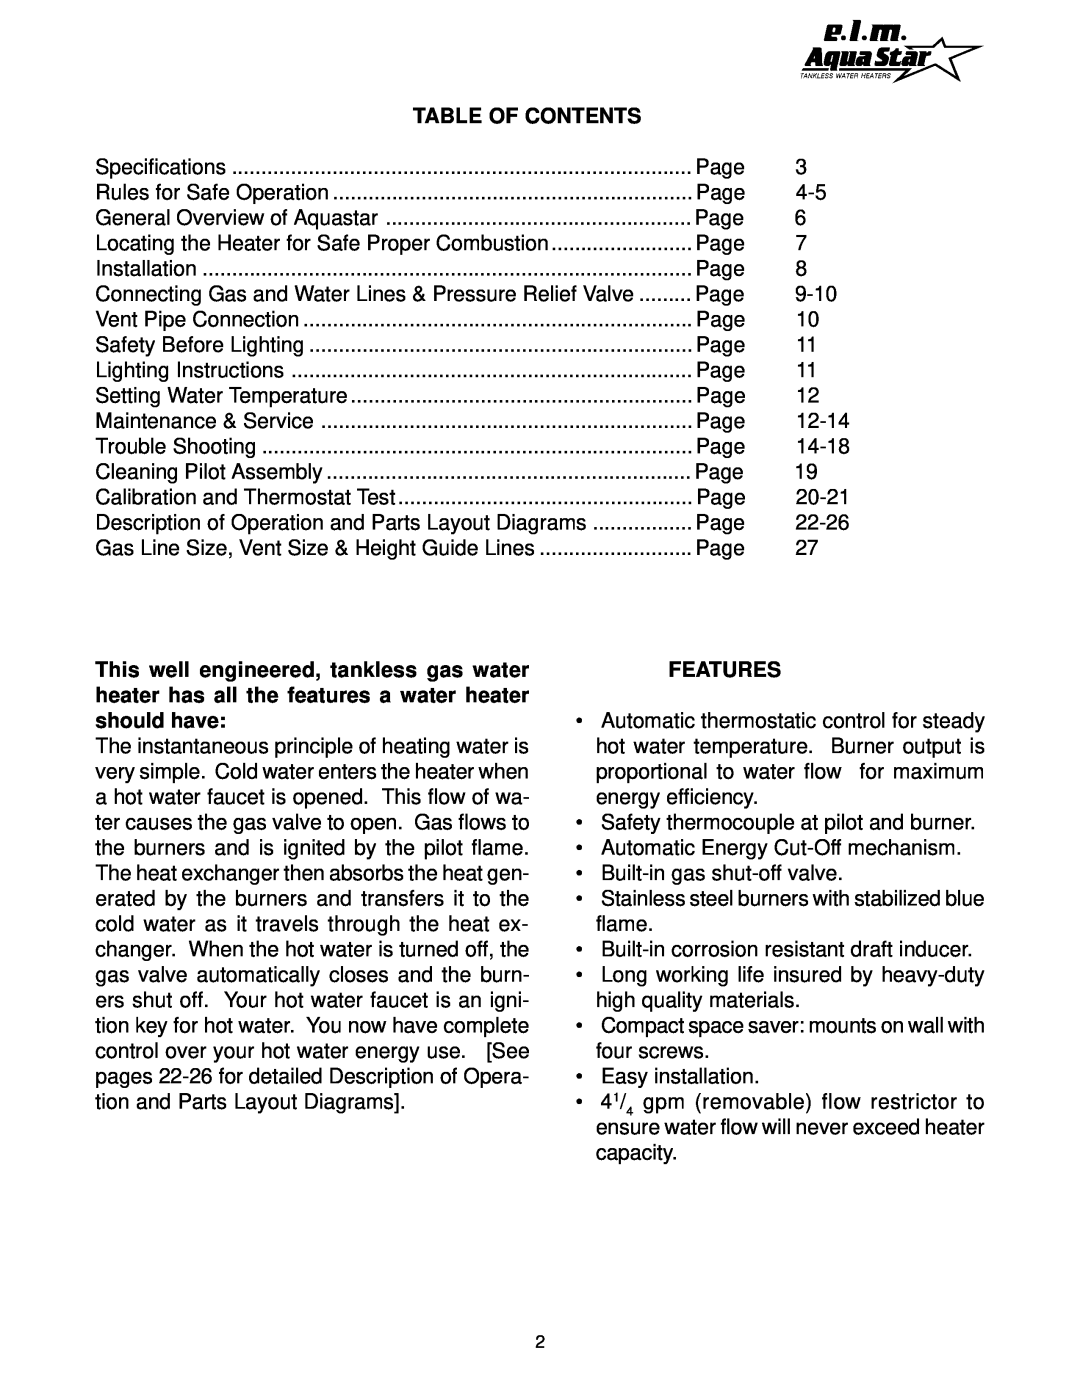 AquaStar 170 VP manual Table Of Contents, Features 